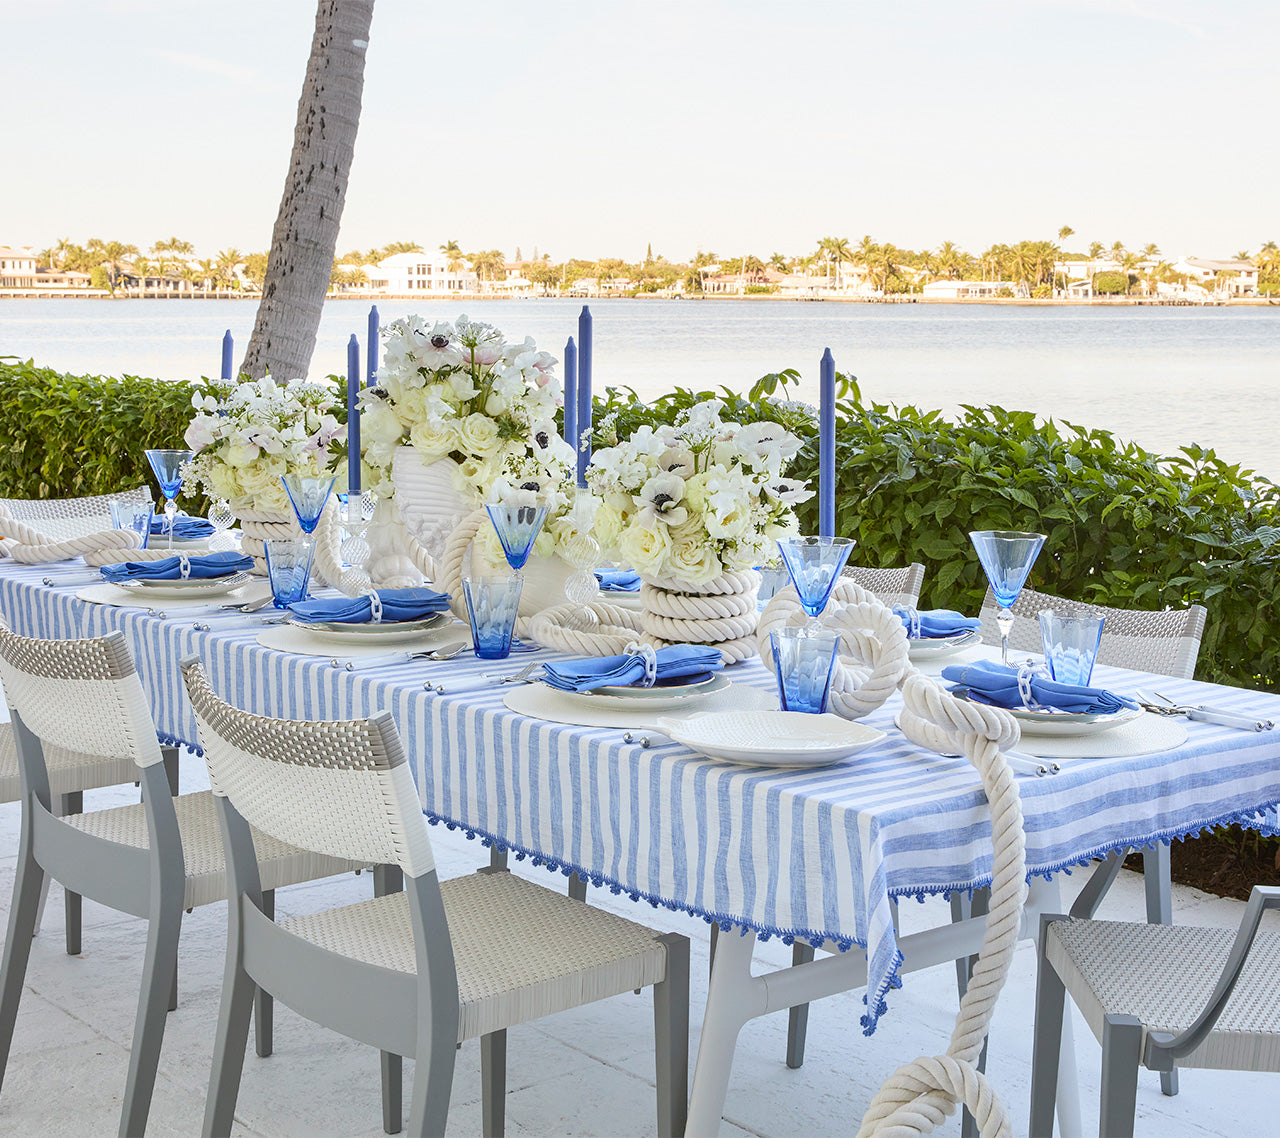 Kim Seybert Luxury Linea Tablecloth in White & Blue